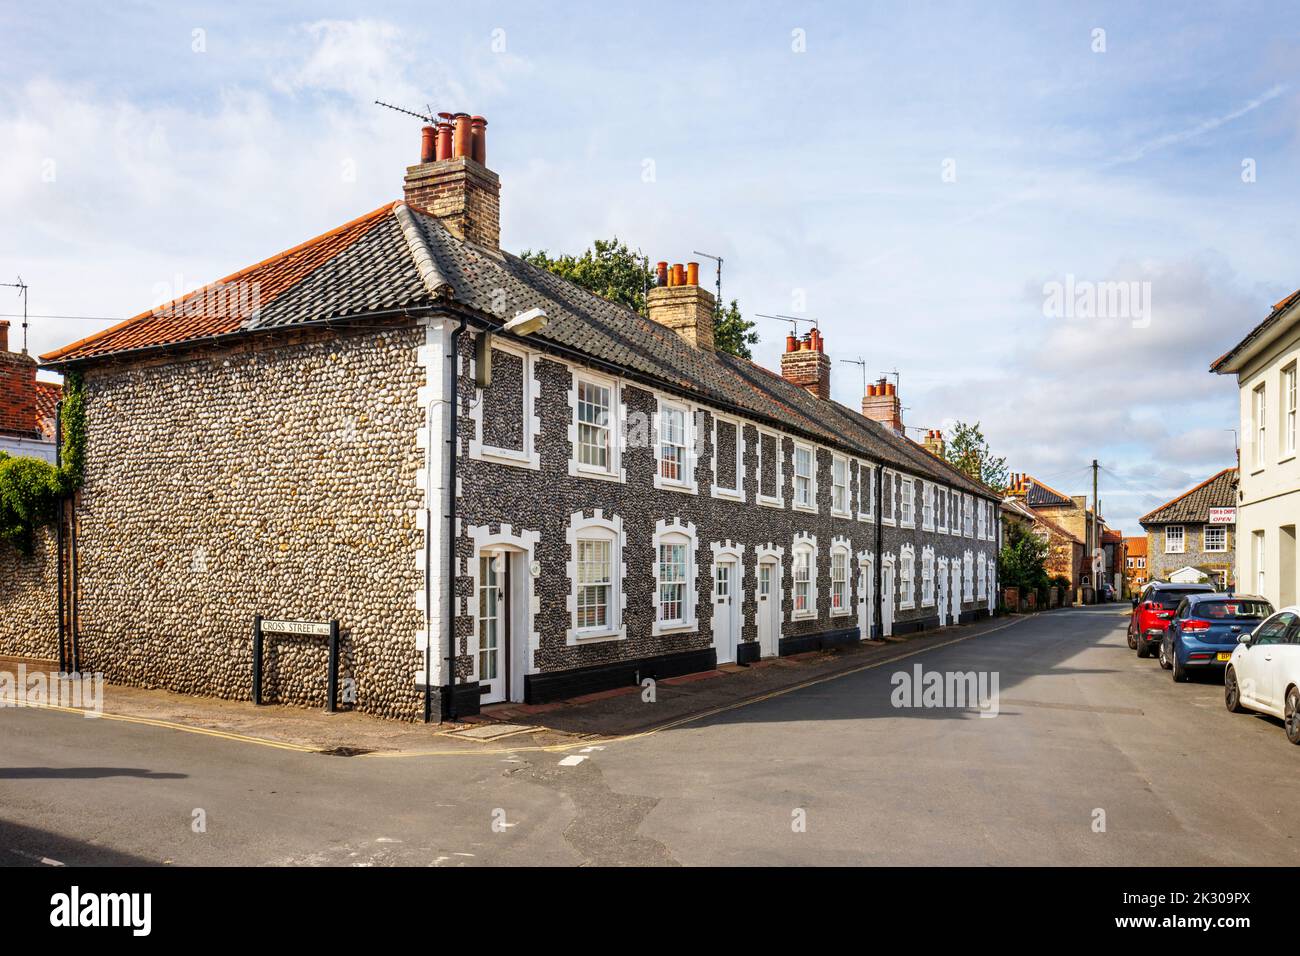 Terrasse de maisons de style architectural local avec des murs en pierre de pierre à Saint-Holt, une petite ville historique de marché géorgien dans le nord de Norfolk, en Angleterre Banque D'Images